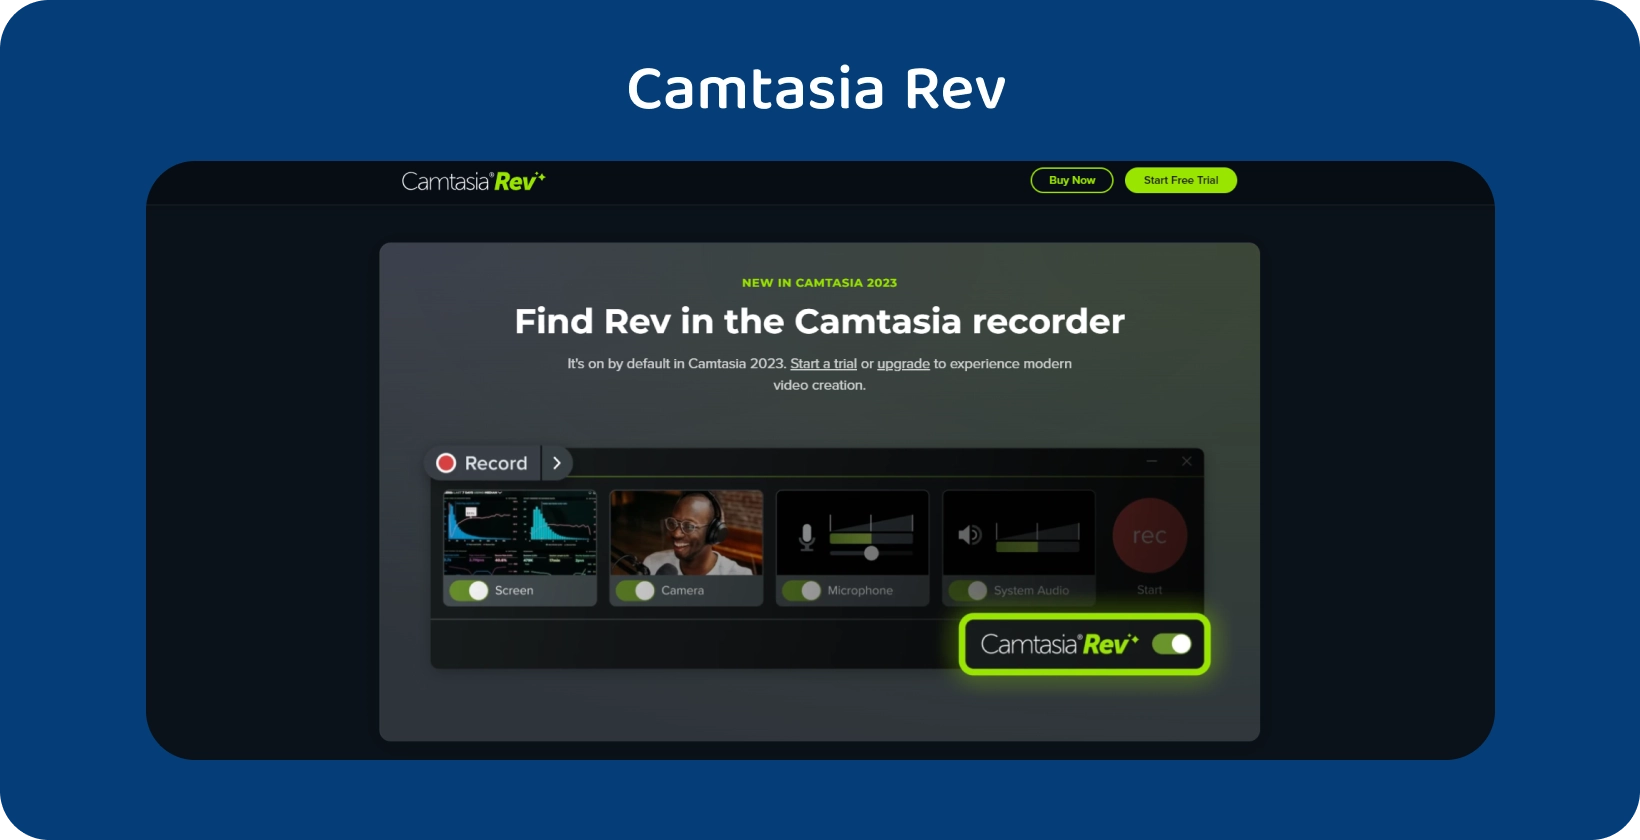 Баннер главной страницы Camtasia Rev, демонстрирующий инструменты для создания видео с помощью AI для улучшения видеопроизводства.